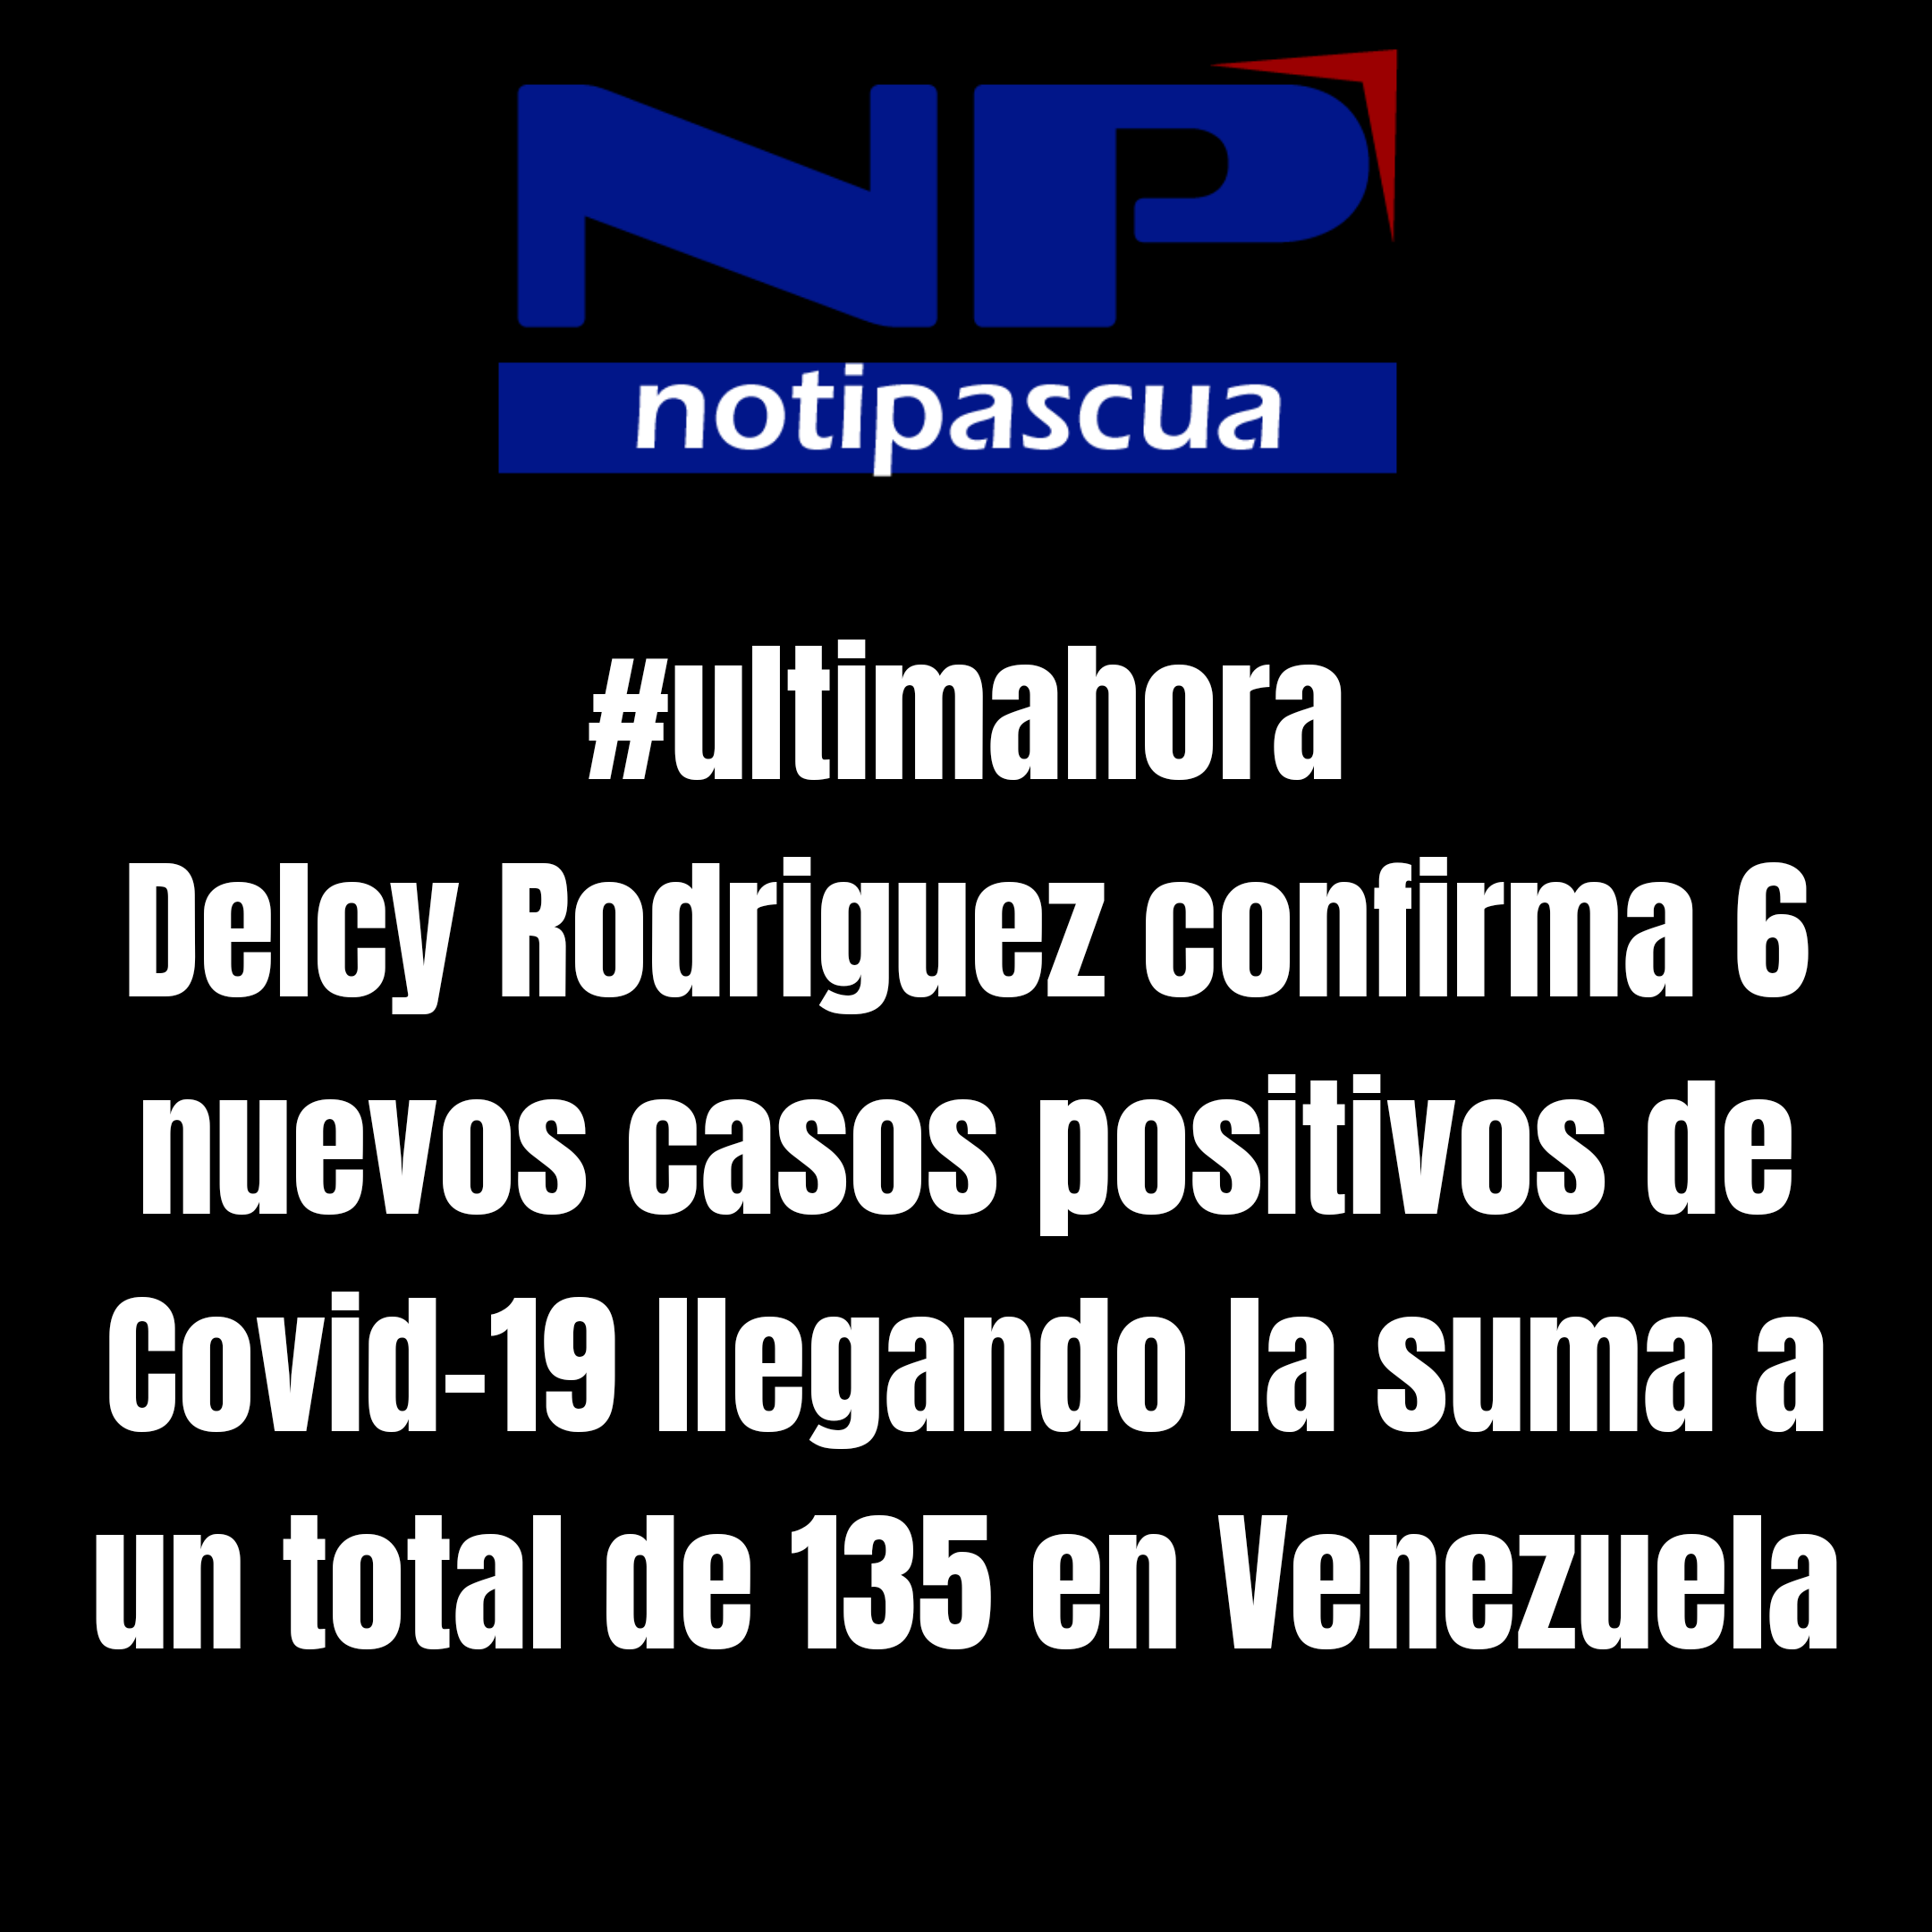 Delcy Rodriguez confirma 6 nuevos casos de Covid-19 en Venezuela